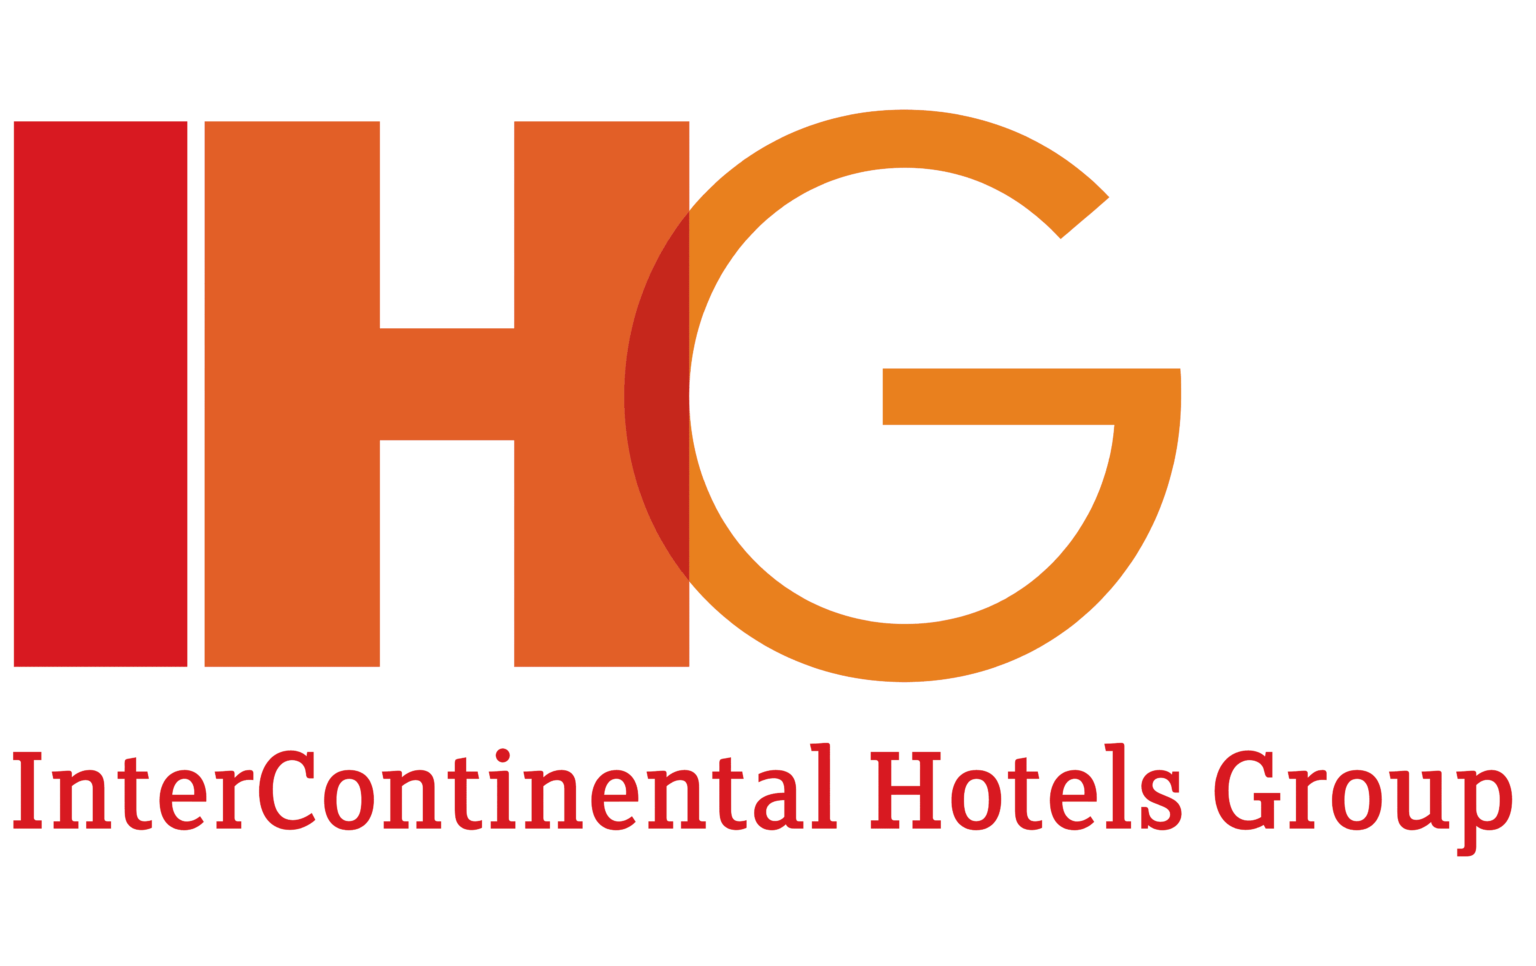 IHG-Logo-2003.png